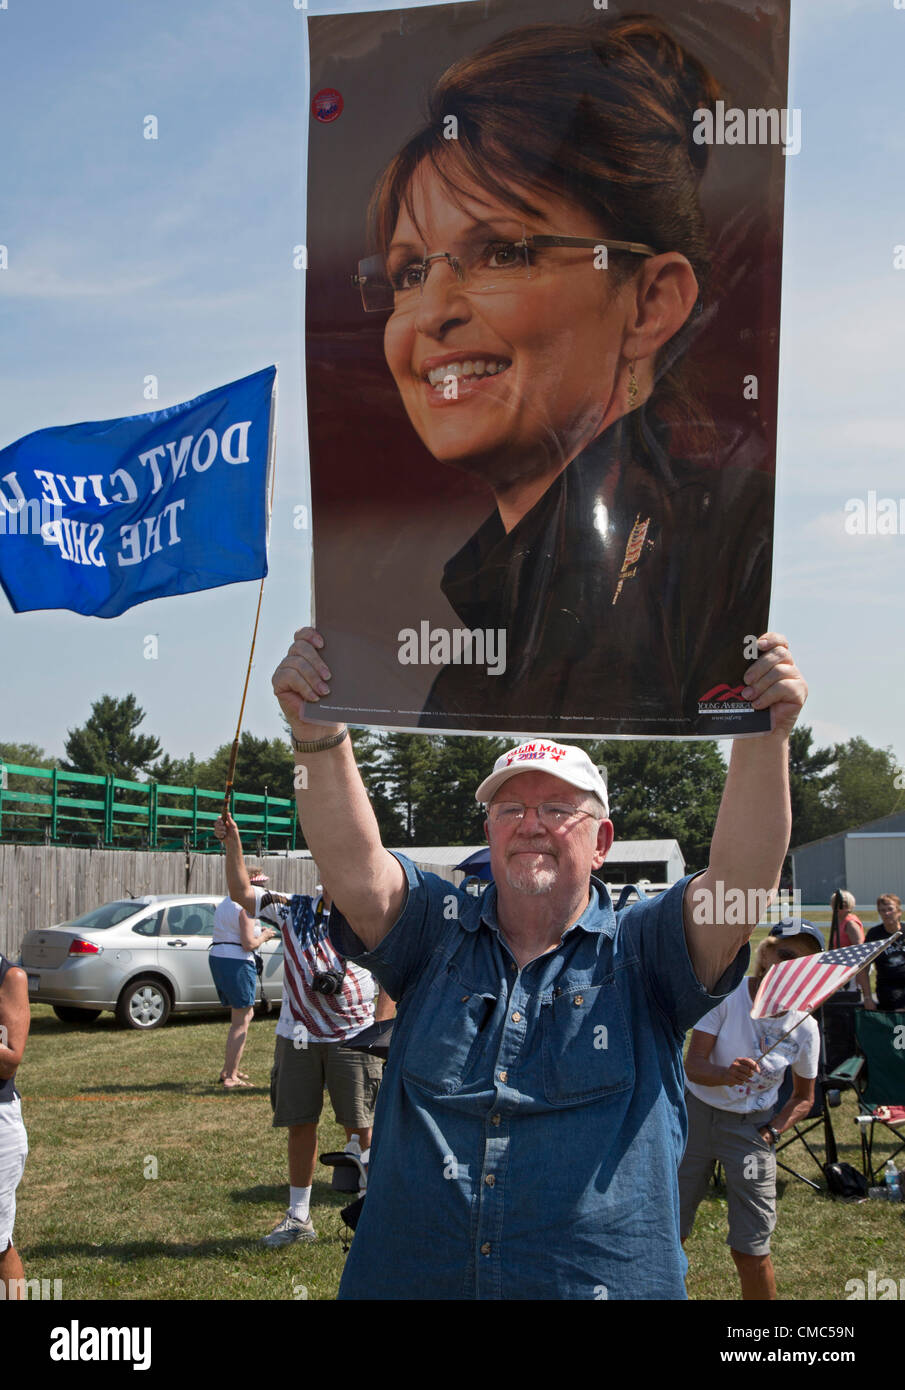 Belleville, Michigan - 14. Juli 2012 - ein 'Patrioten im Park' Rallye, organisiert von der Tea Party und die Amerikaner für den Wohlstand. Das Publikum hörte eine Rede des ehemaligen Alaskas Gouverneurin Sarah Palin. Stockfoto